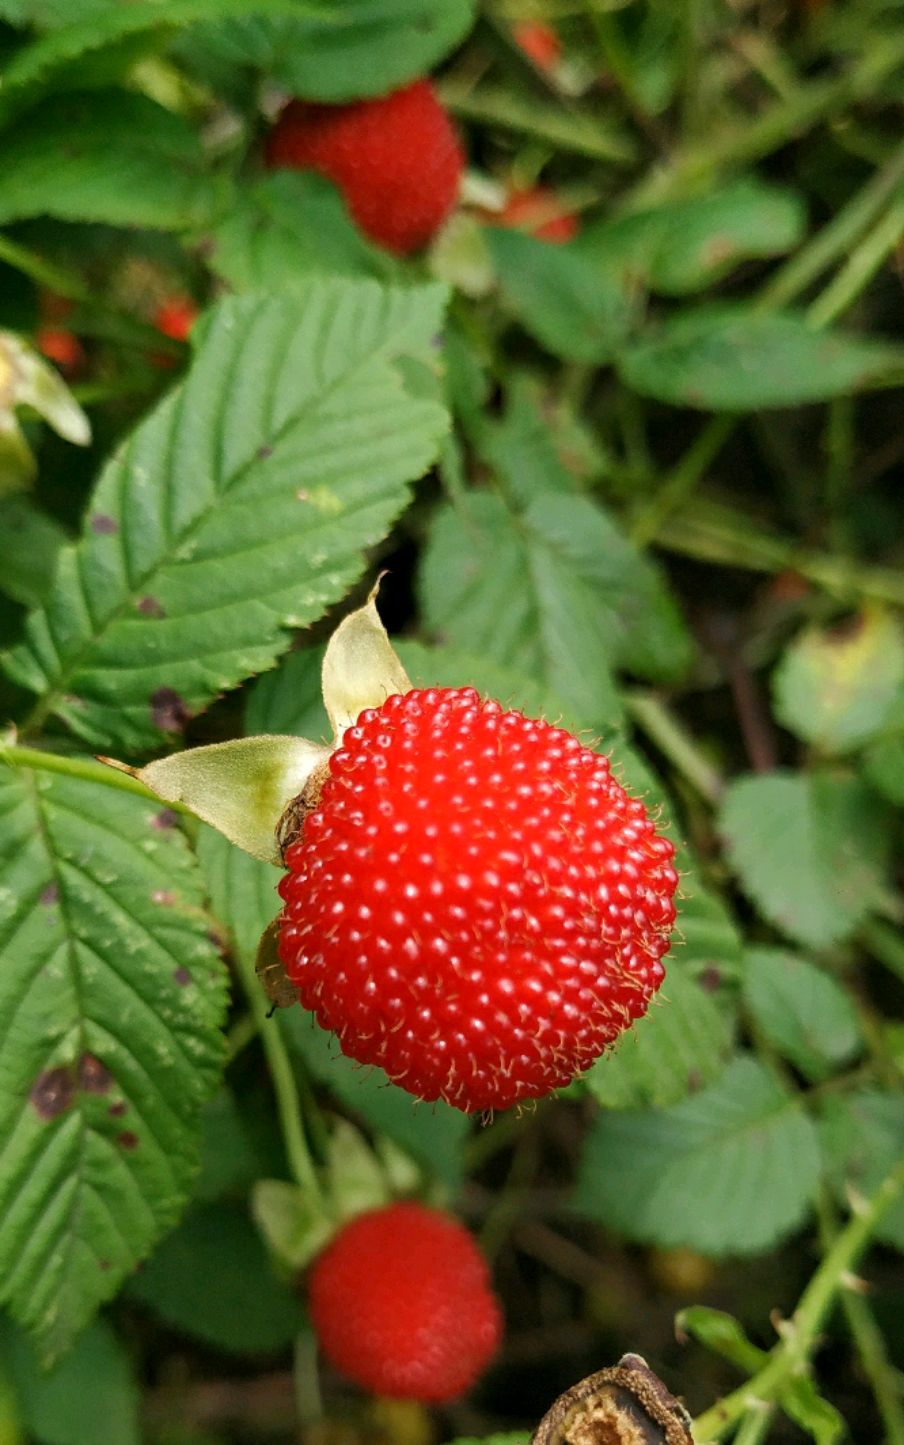 漫山遍野的野生树莓果清甜可口,赏心悦目,实在是太好吃了吧